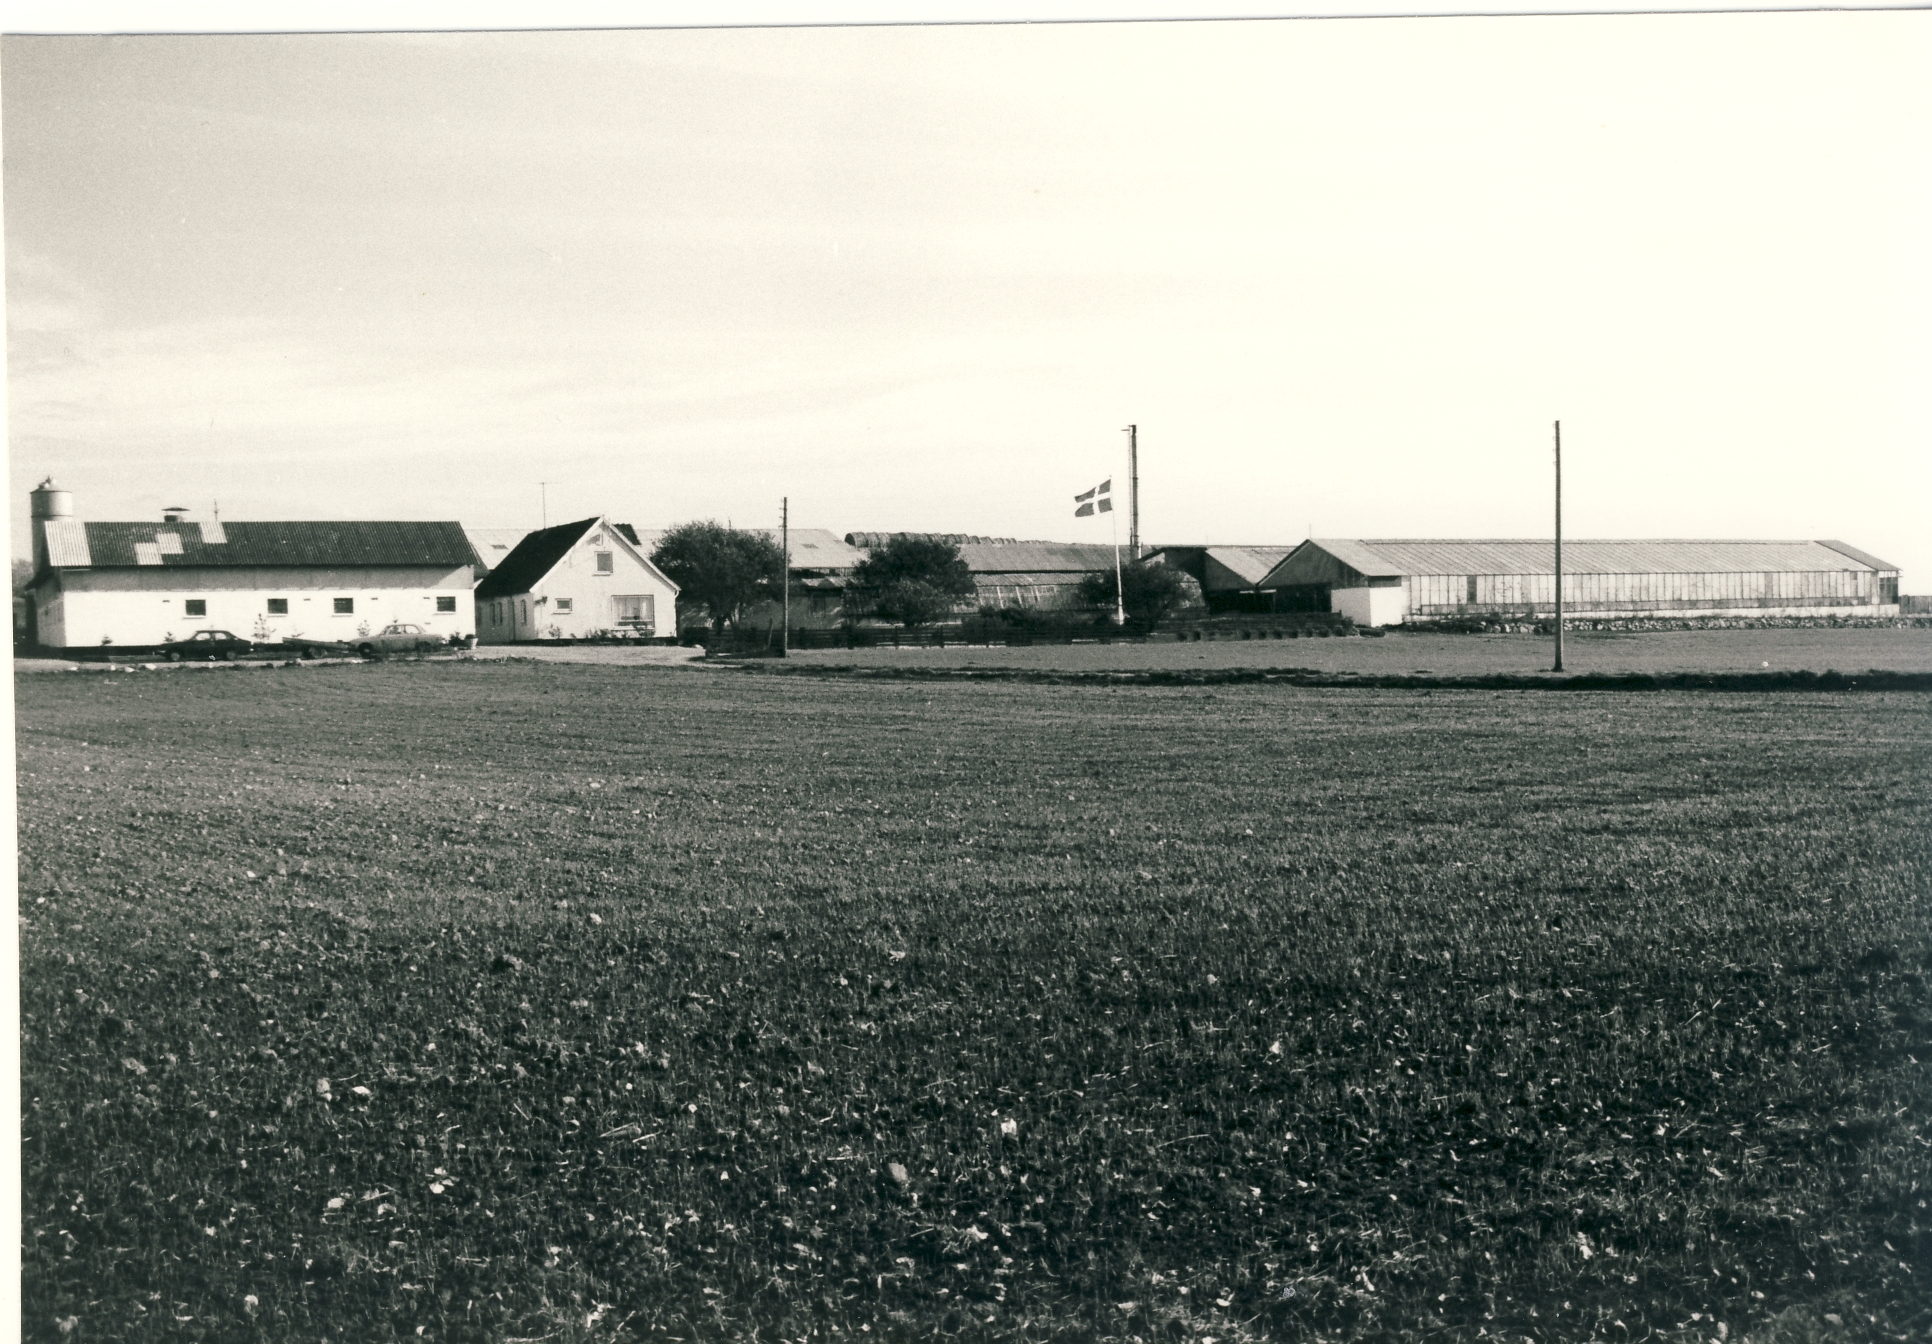 Landejendom, Lykkebjergvej 8, Høve - 1983 (B1321)